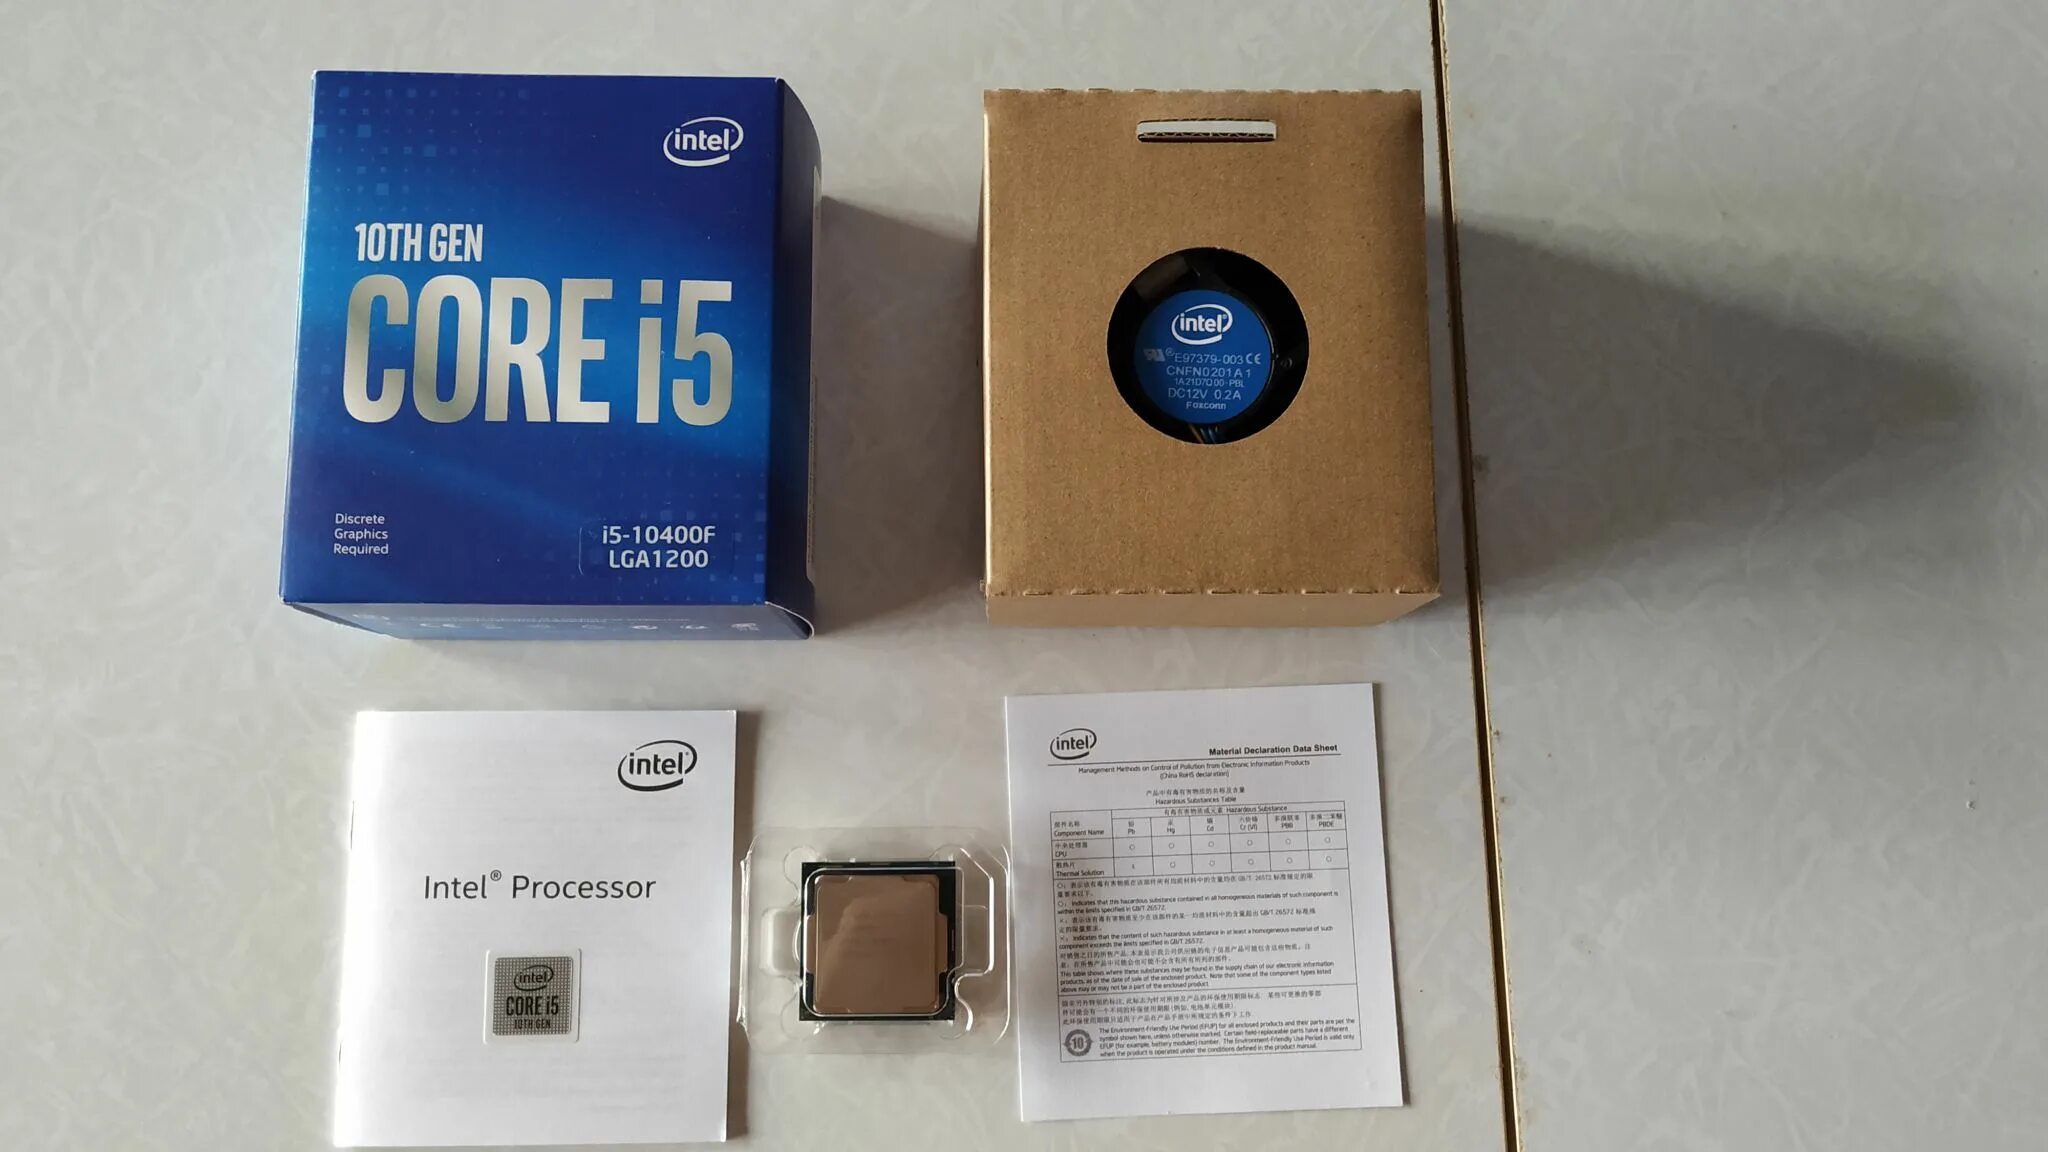 Intel Core i5-10400f. Процессор Intel Core i5-10400f Box. Процессор Intel Core i5 Comet Lake i5-10400f OEM. Intel Core i5 10400, LGA 1200, OEM. Интел 5 10400